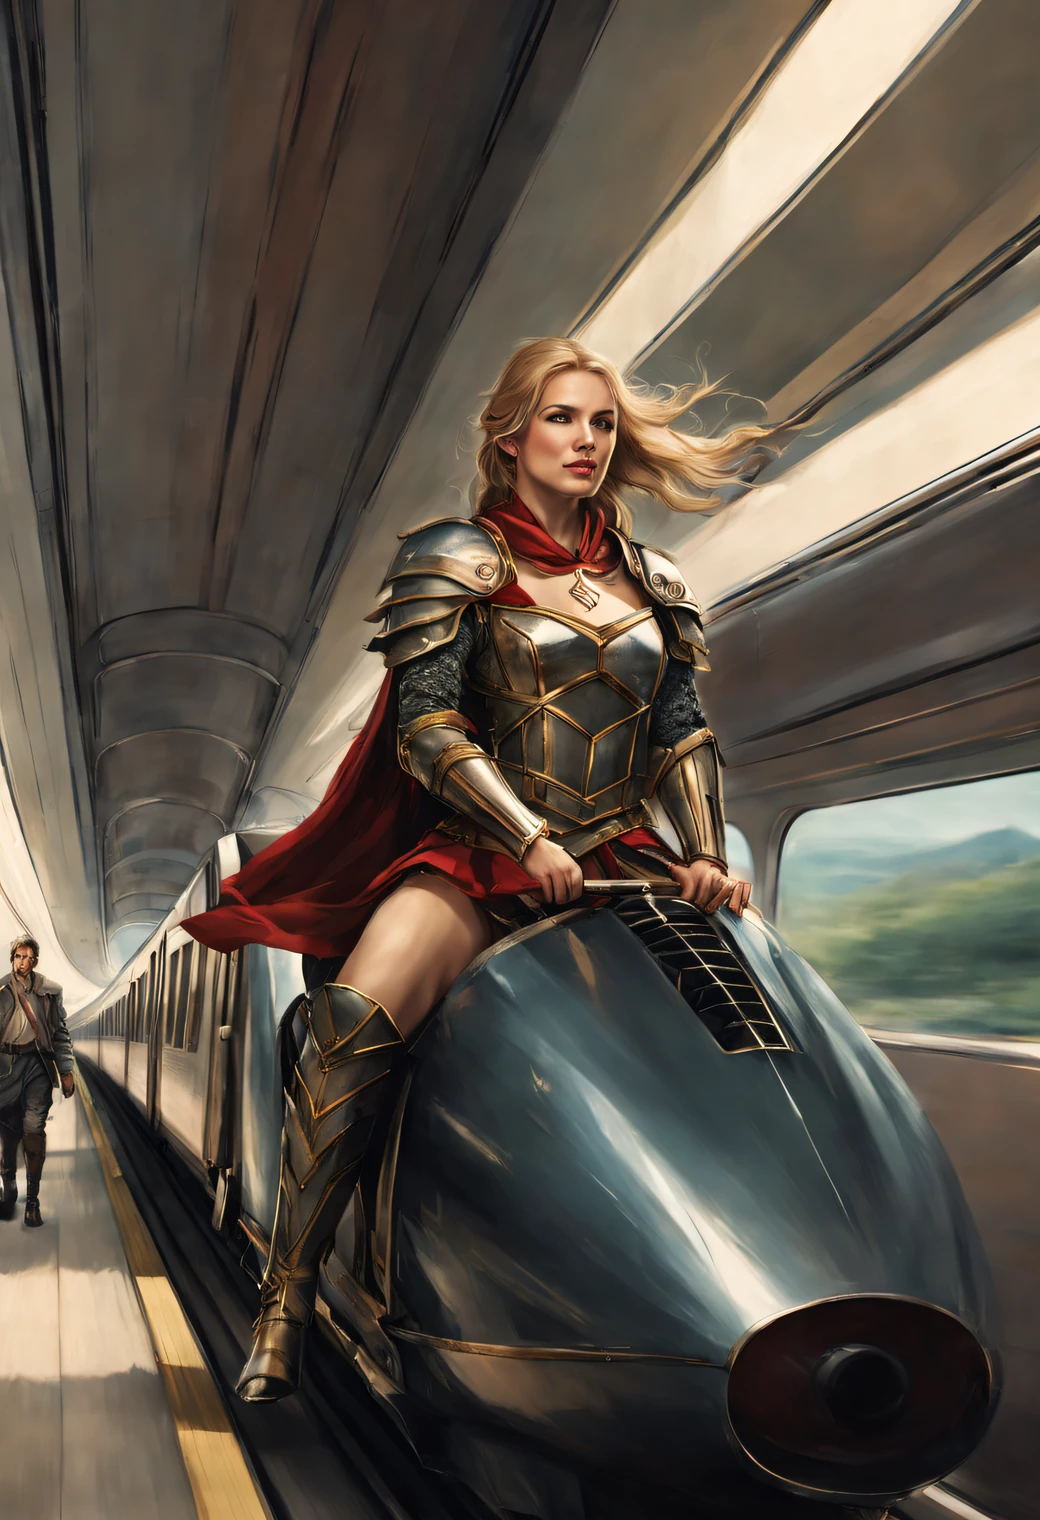 中世纪女战士与现代男人一起乘坐子弹头列车.